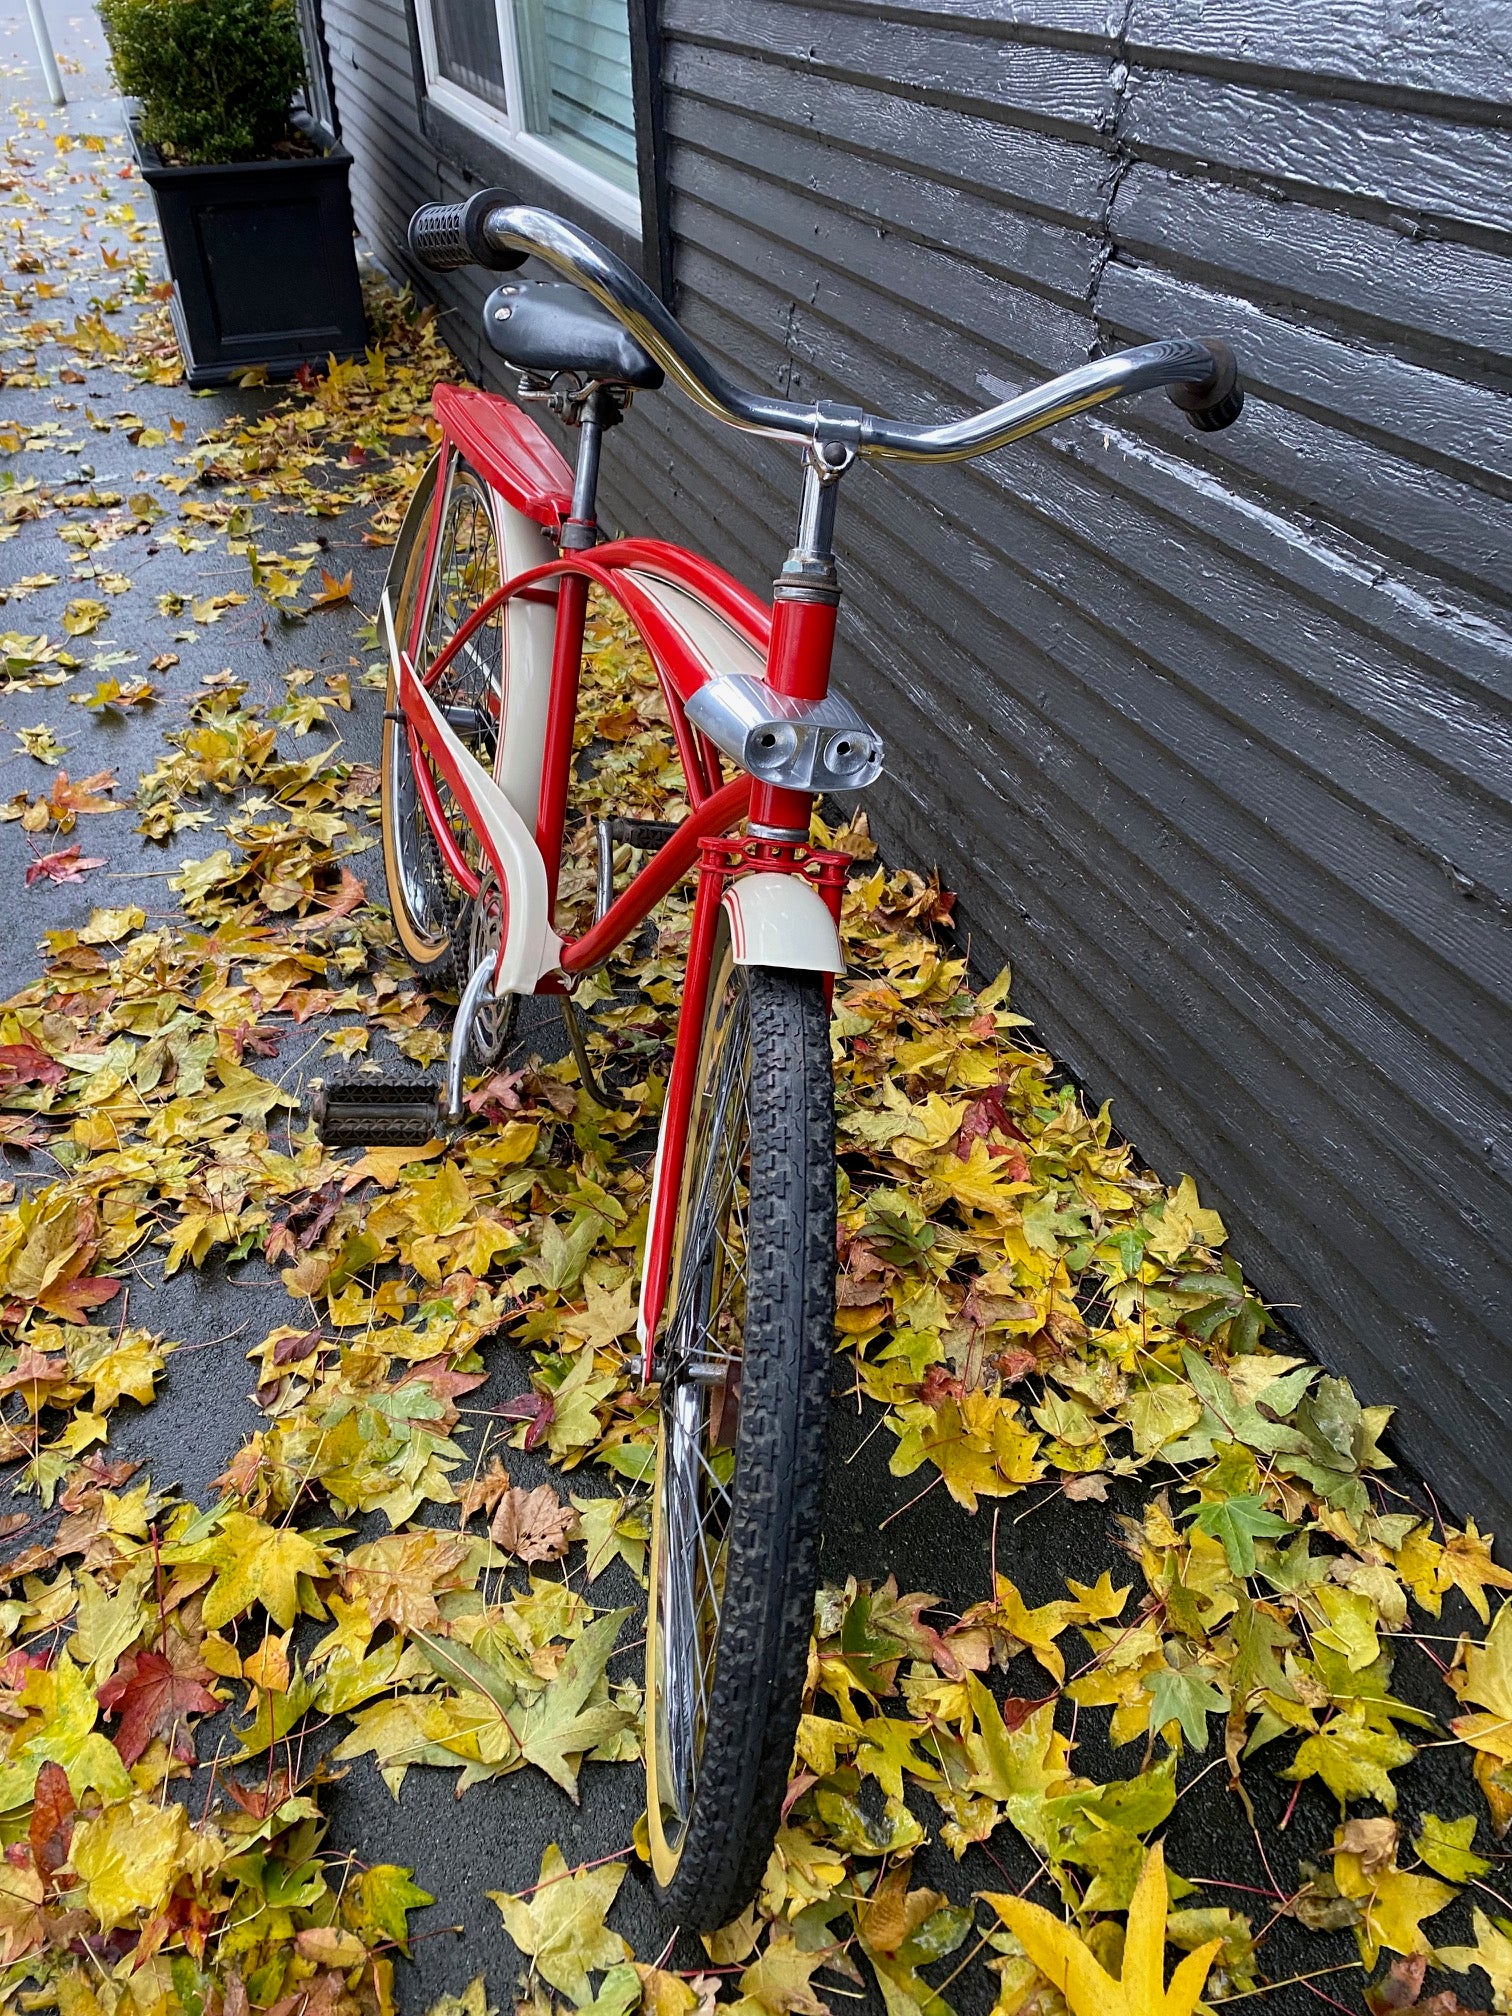 1960s Western Flyer Red Bike